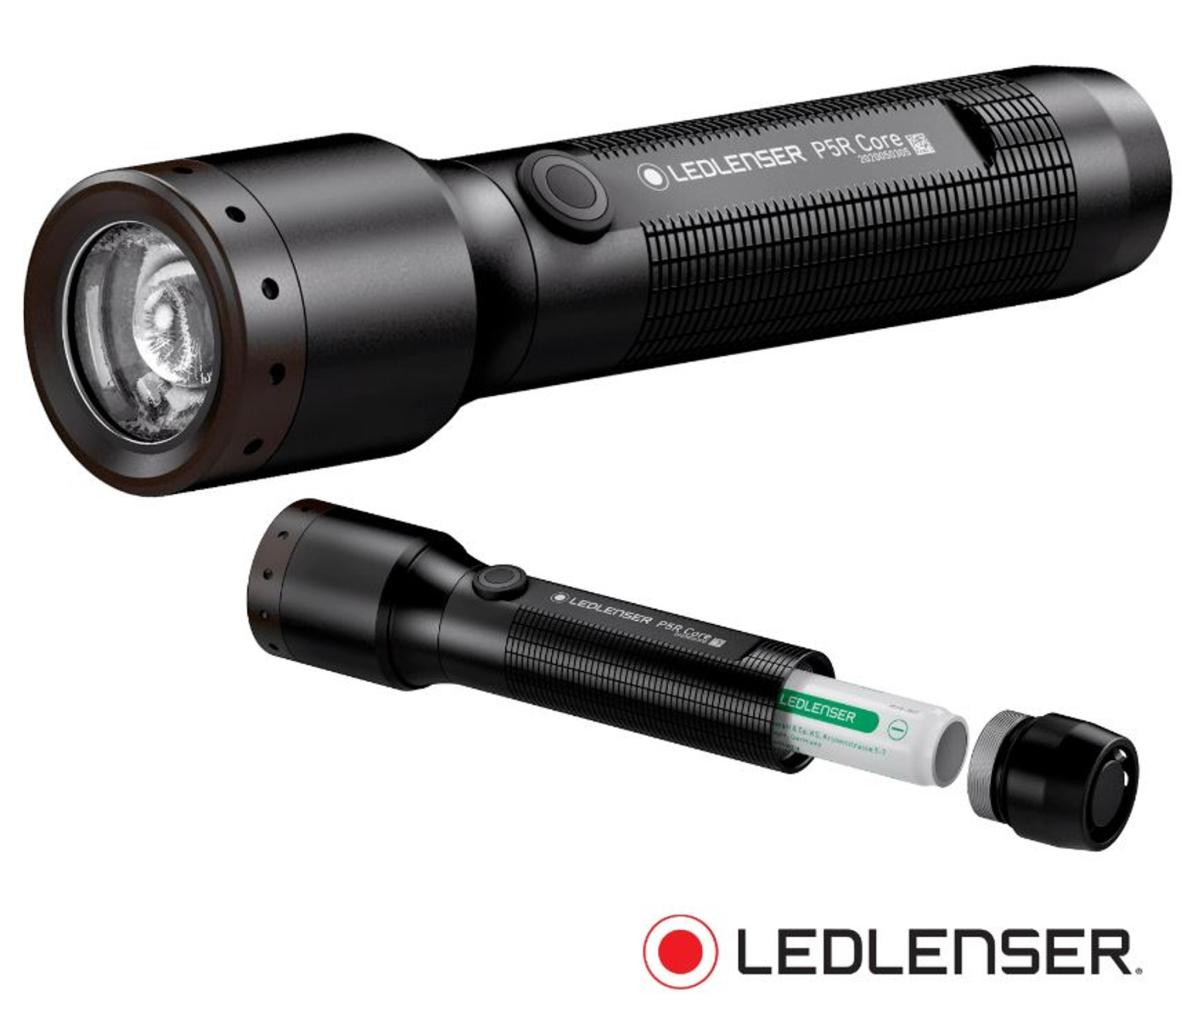 Lampe torche ledlenser p5r core rechargeable / haute puissance 500lm /  portée 250m / robuste et compacte / ip68